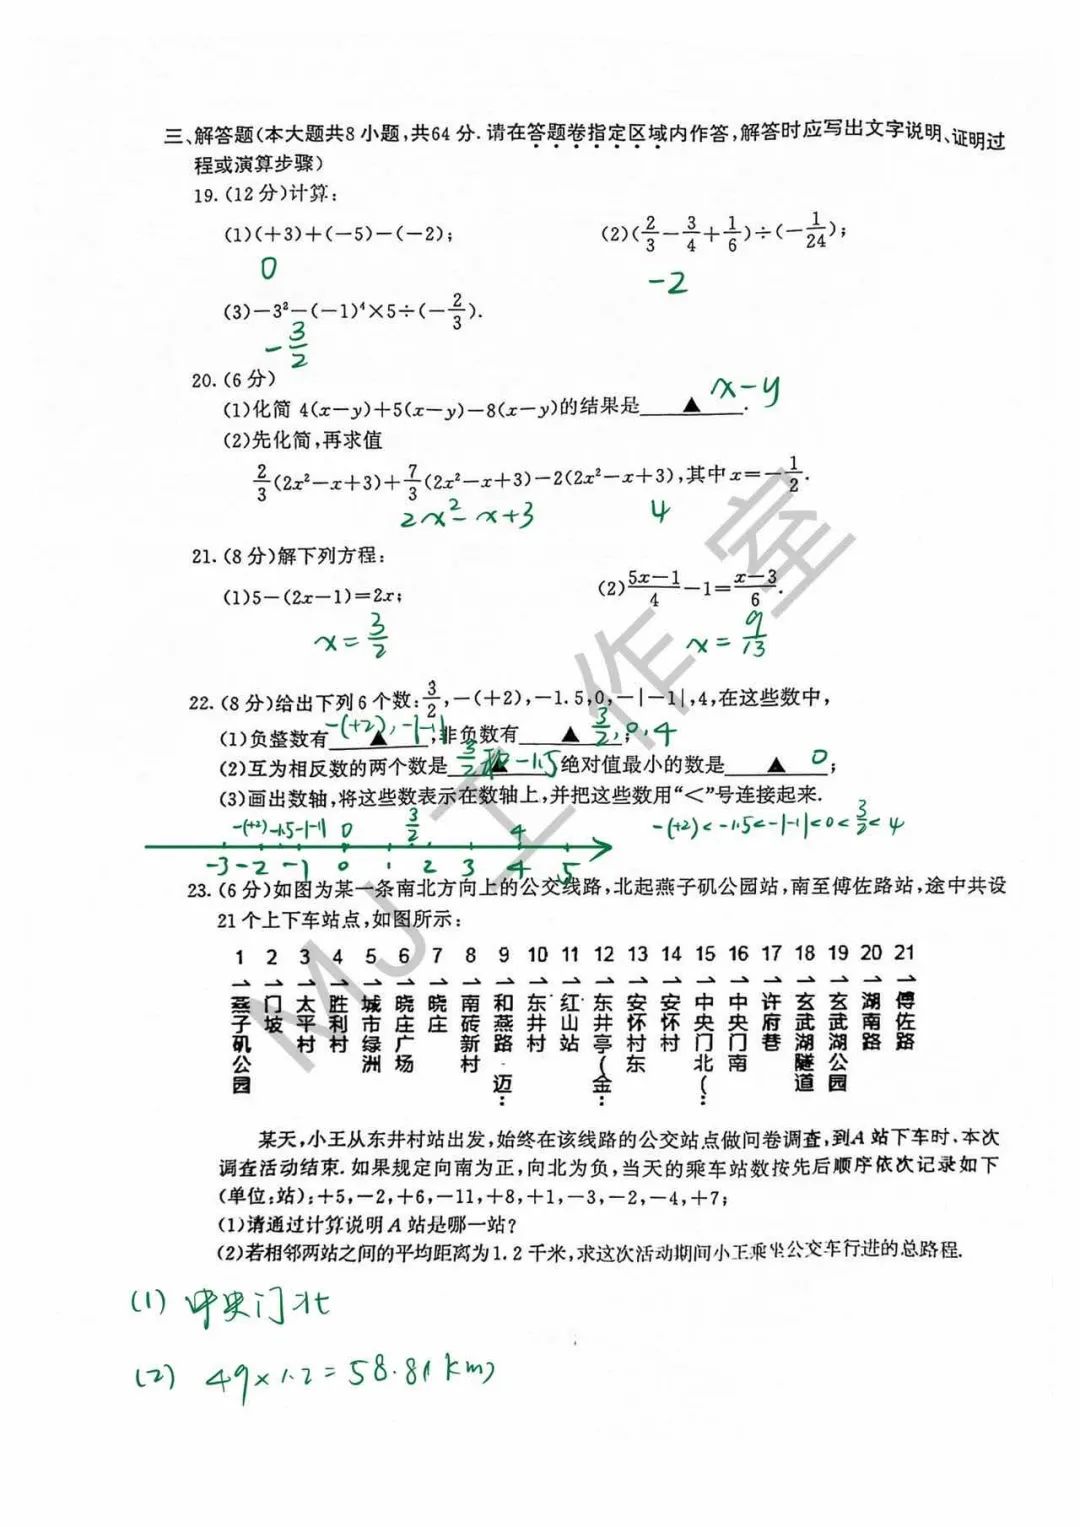 南京首份数学期中考试答案